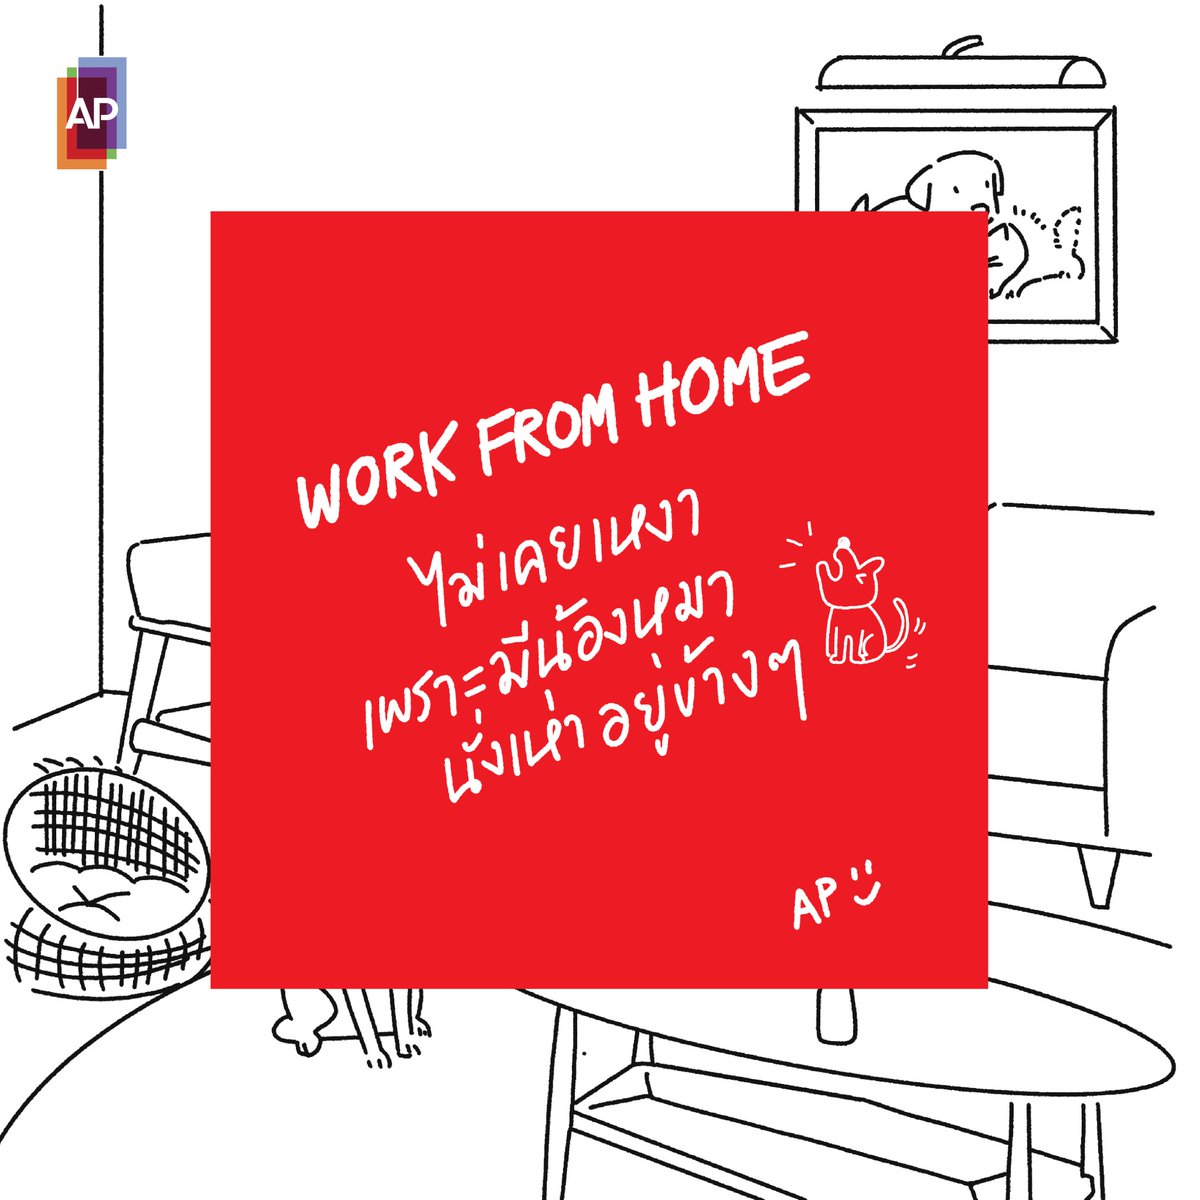 Work from home ไม่เคยเหงา เพราะมีน้องหมานั่งเห่า อยู่ข้าง ๆ

#APThai #ชีวิตดีๆที่เลือกเองได้ #APLivingSeries  #เรื่องบ้านๆที่โคตรสุข